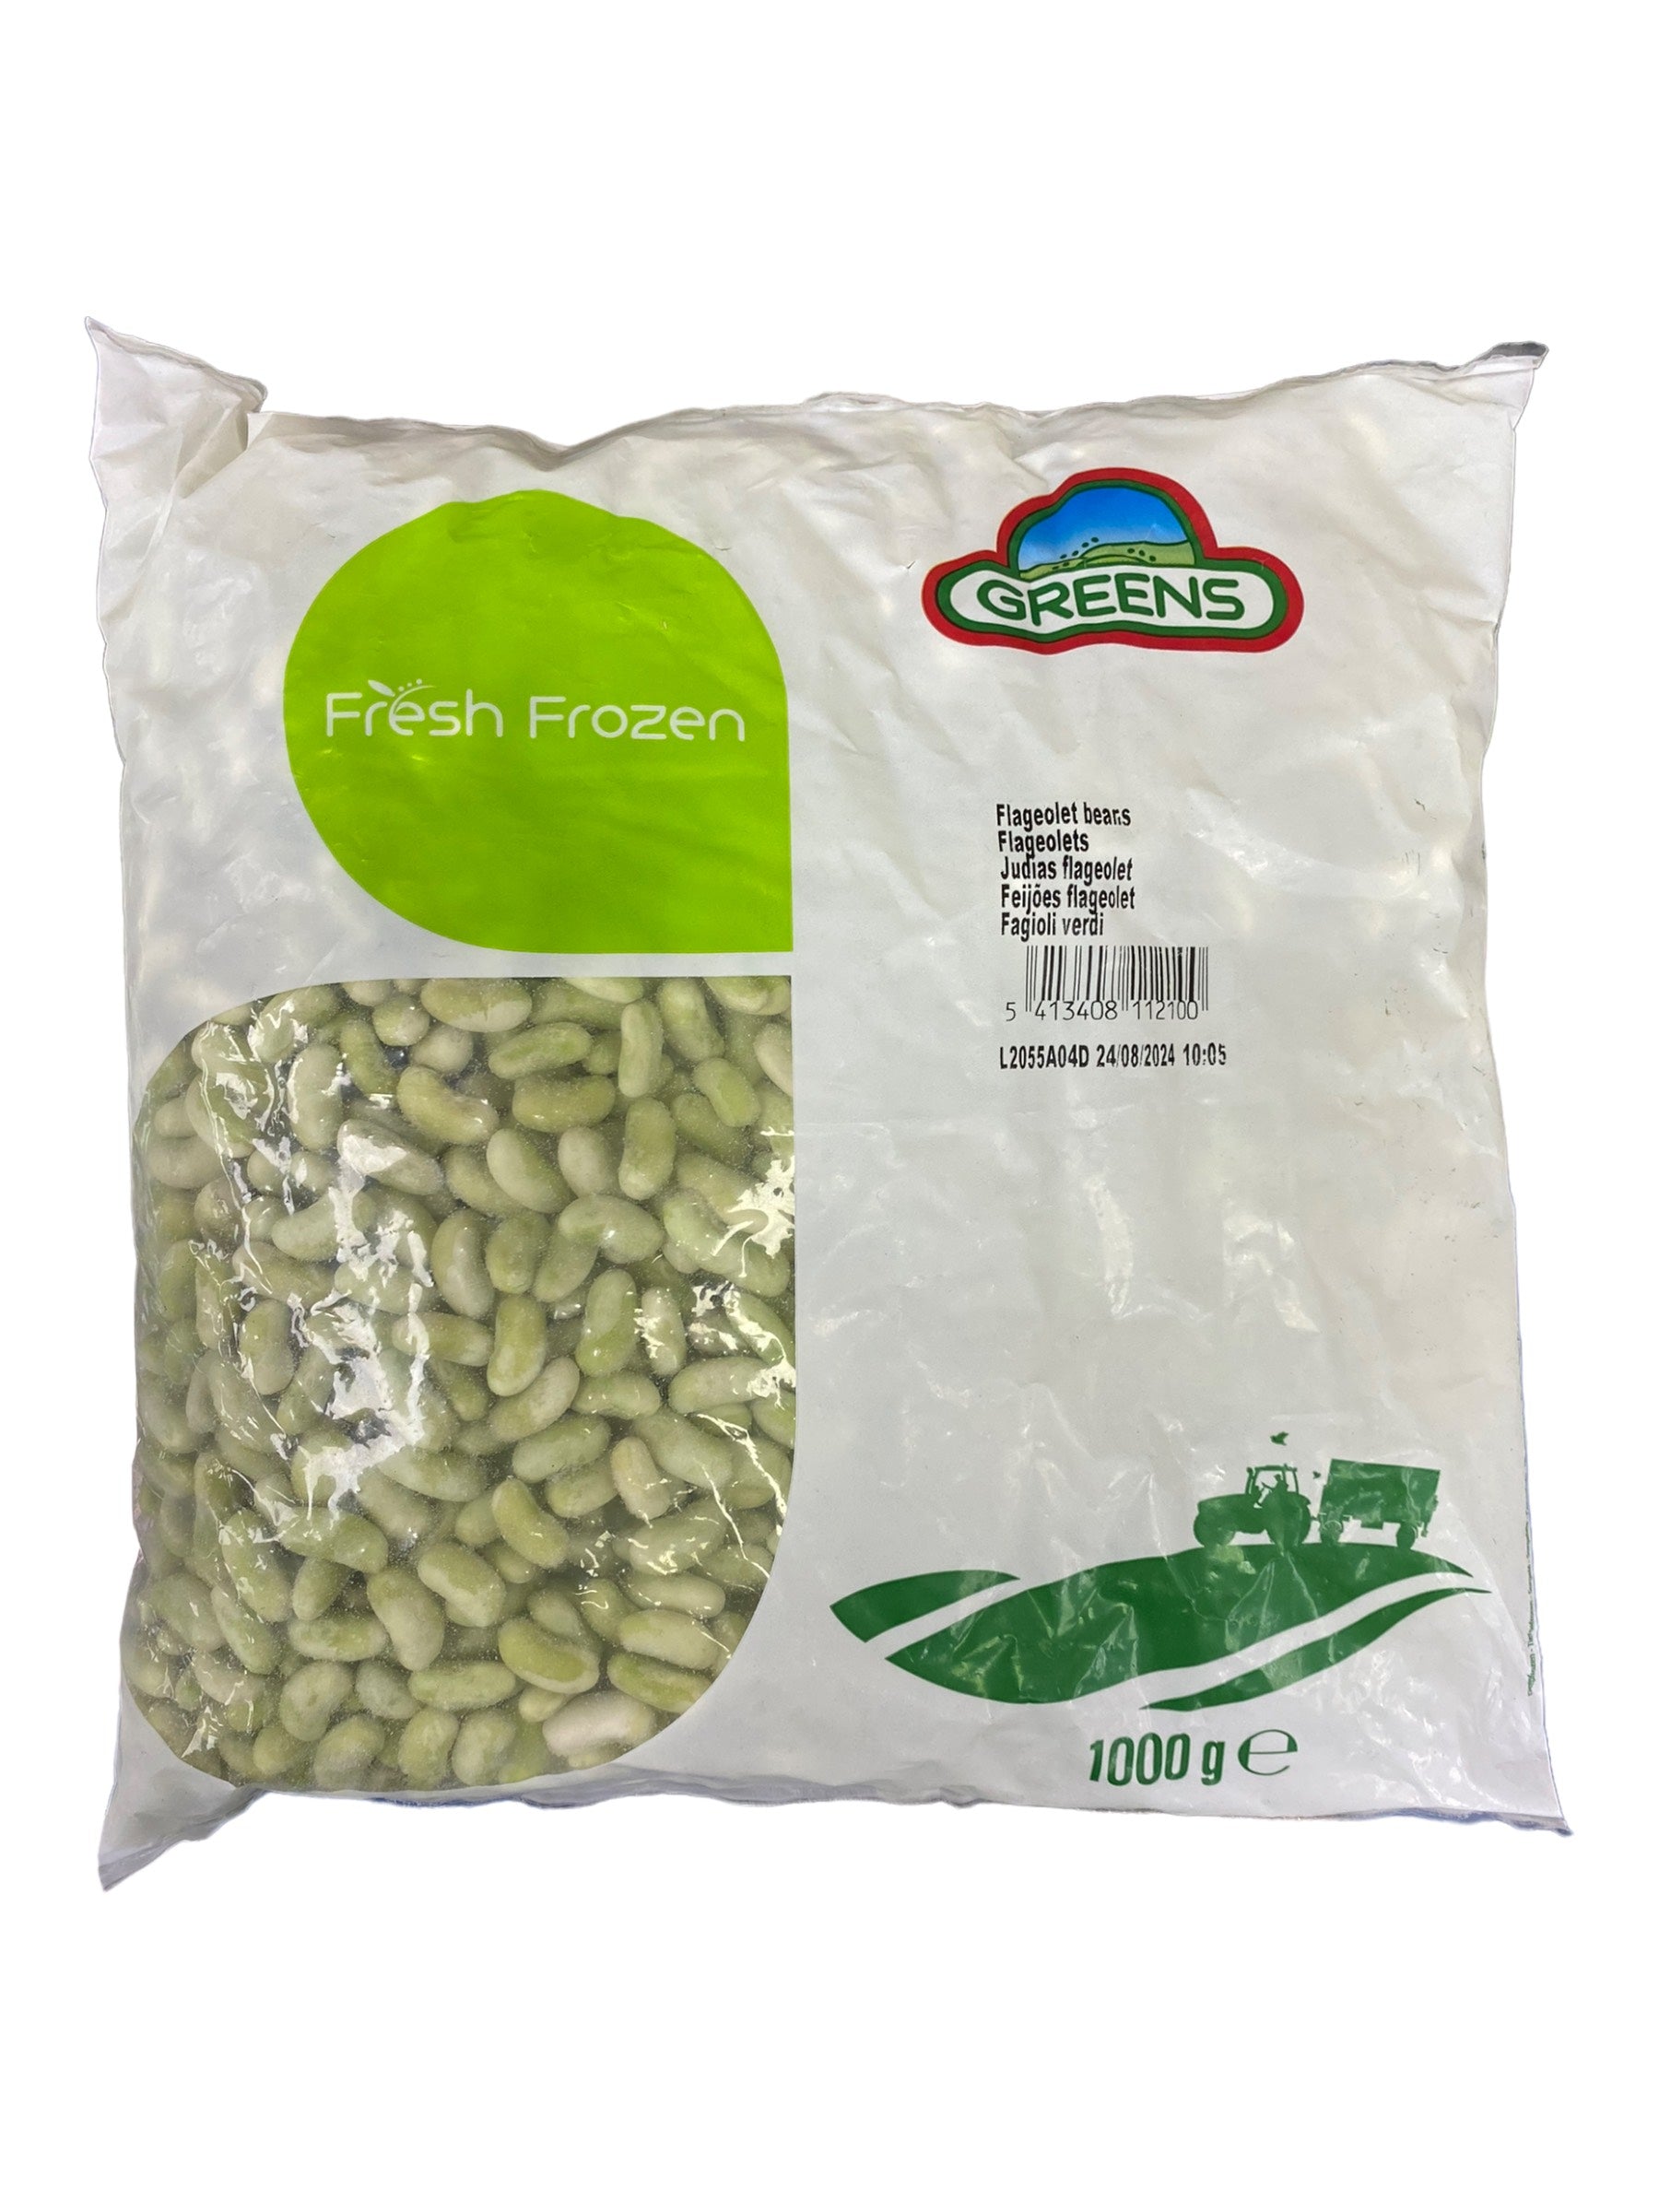 GREENS Flageplet Beans (1000g)